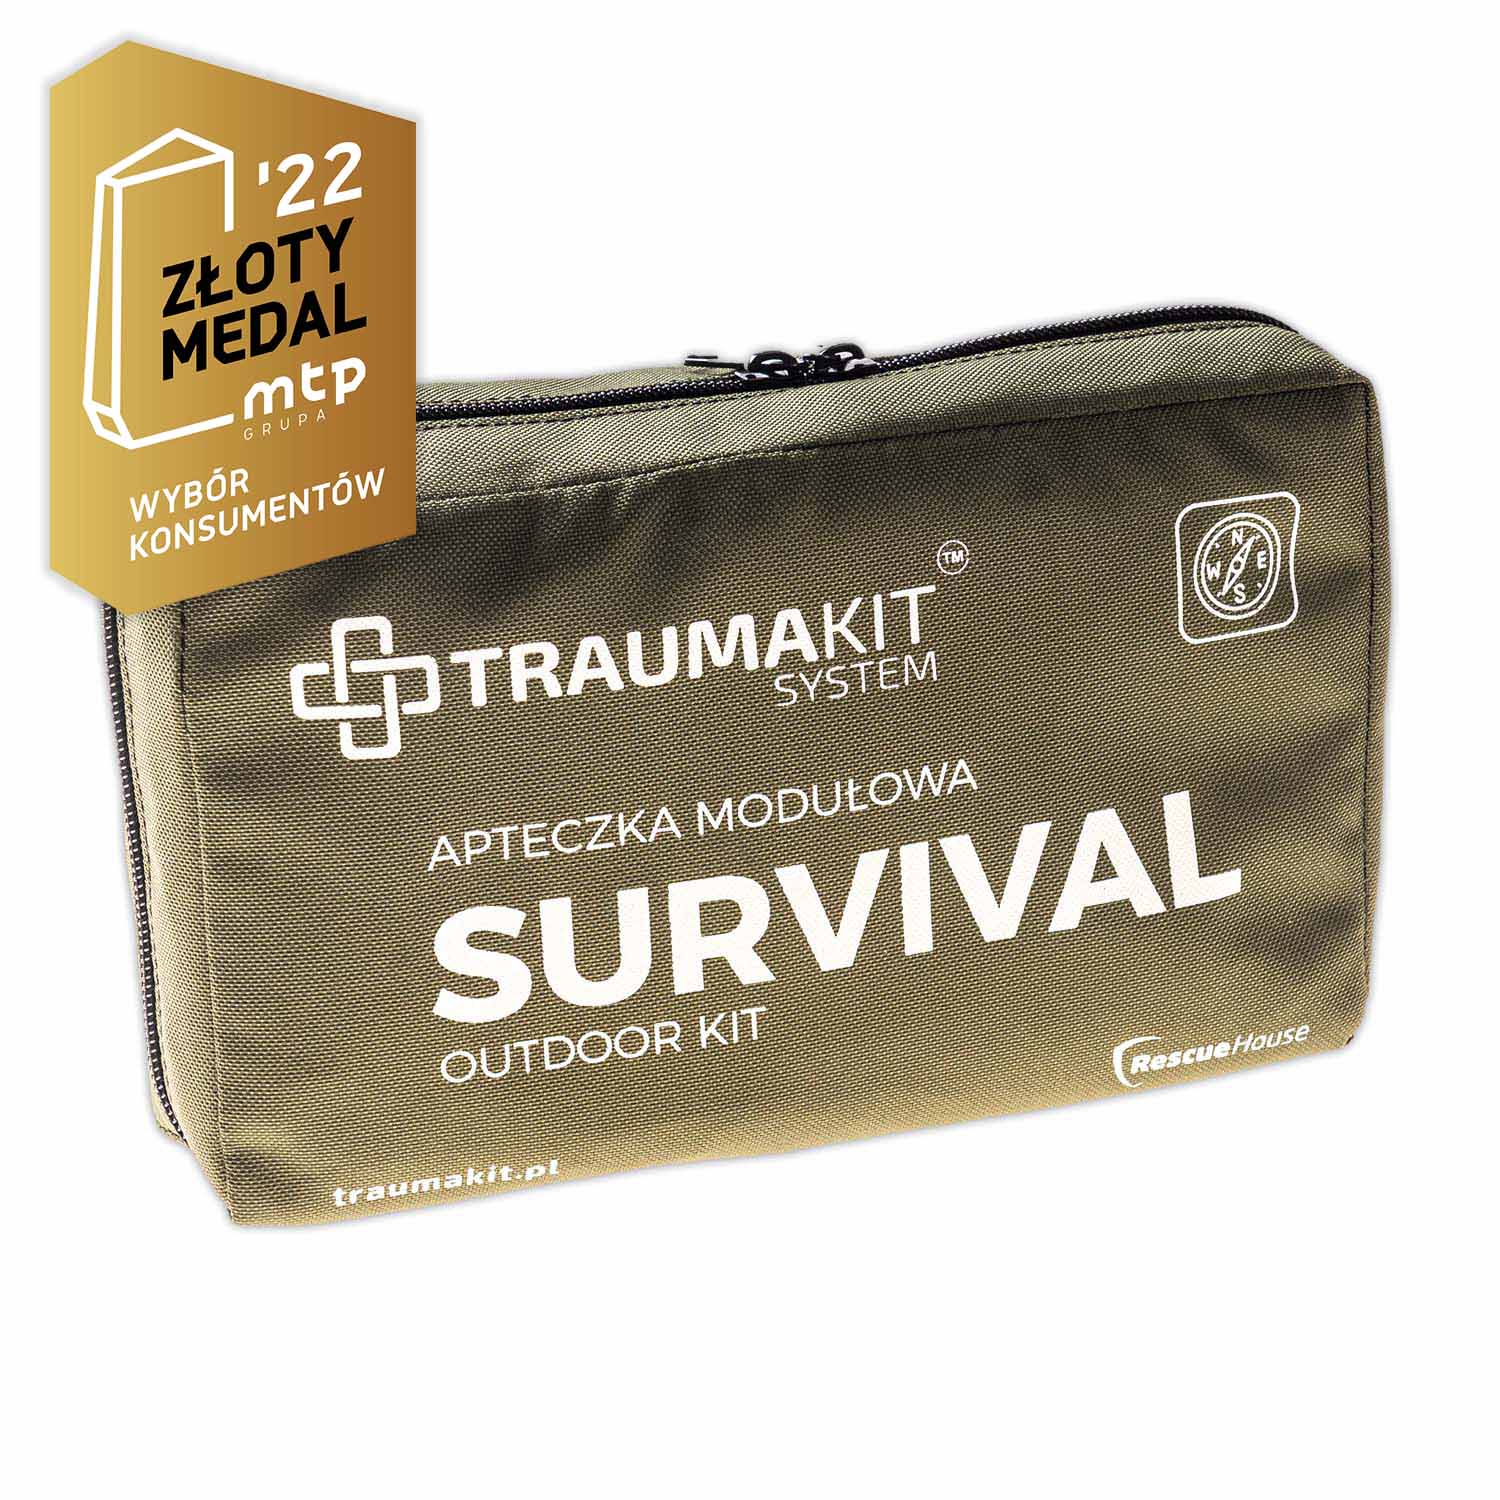 TRAUMA KIT Survival (V) apteczka modułowa